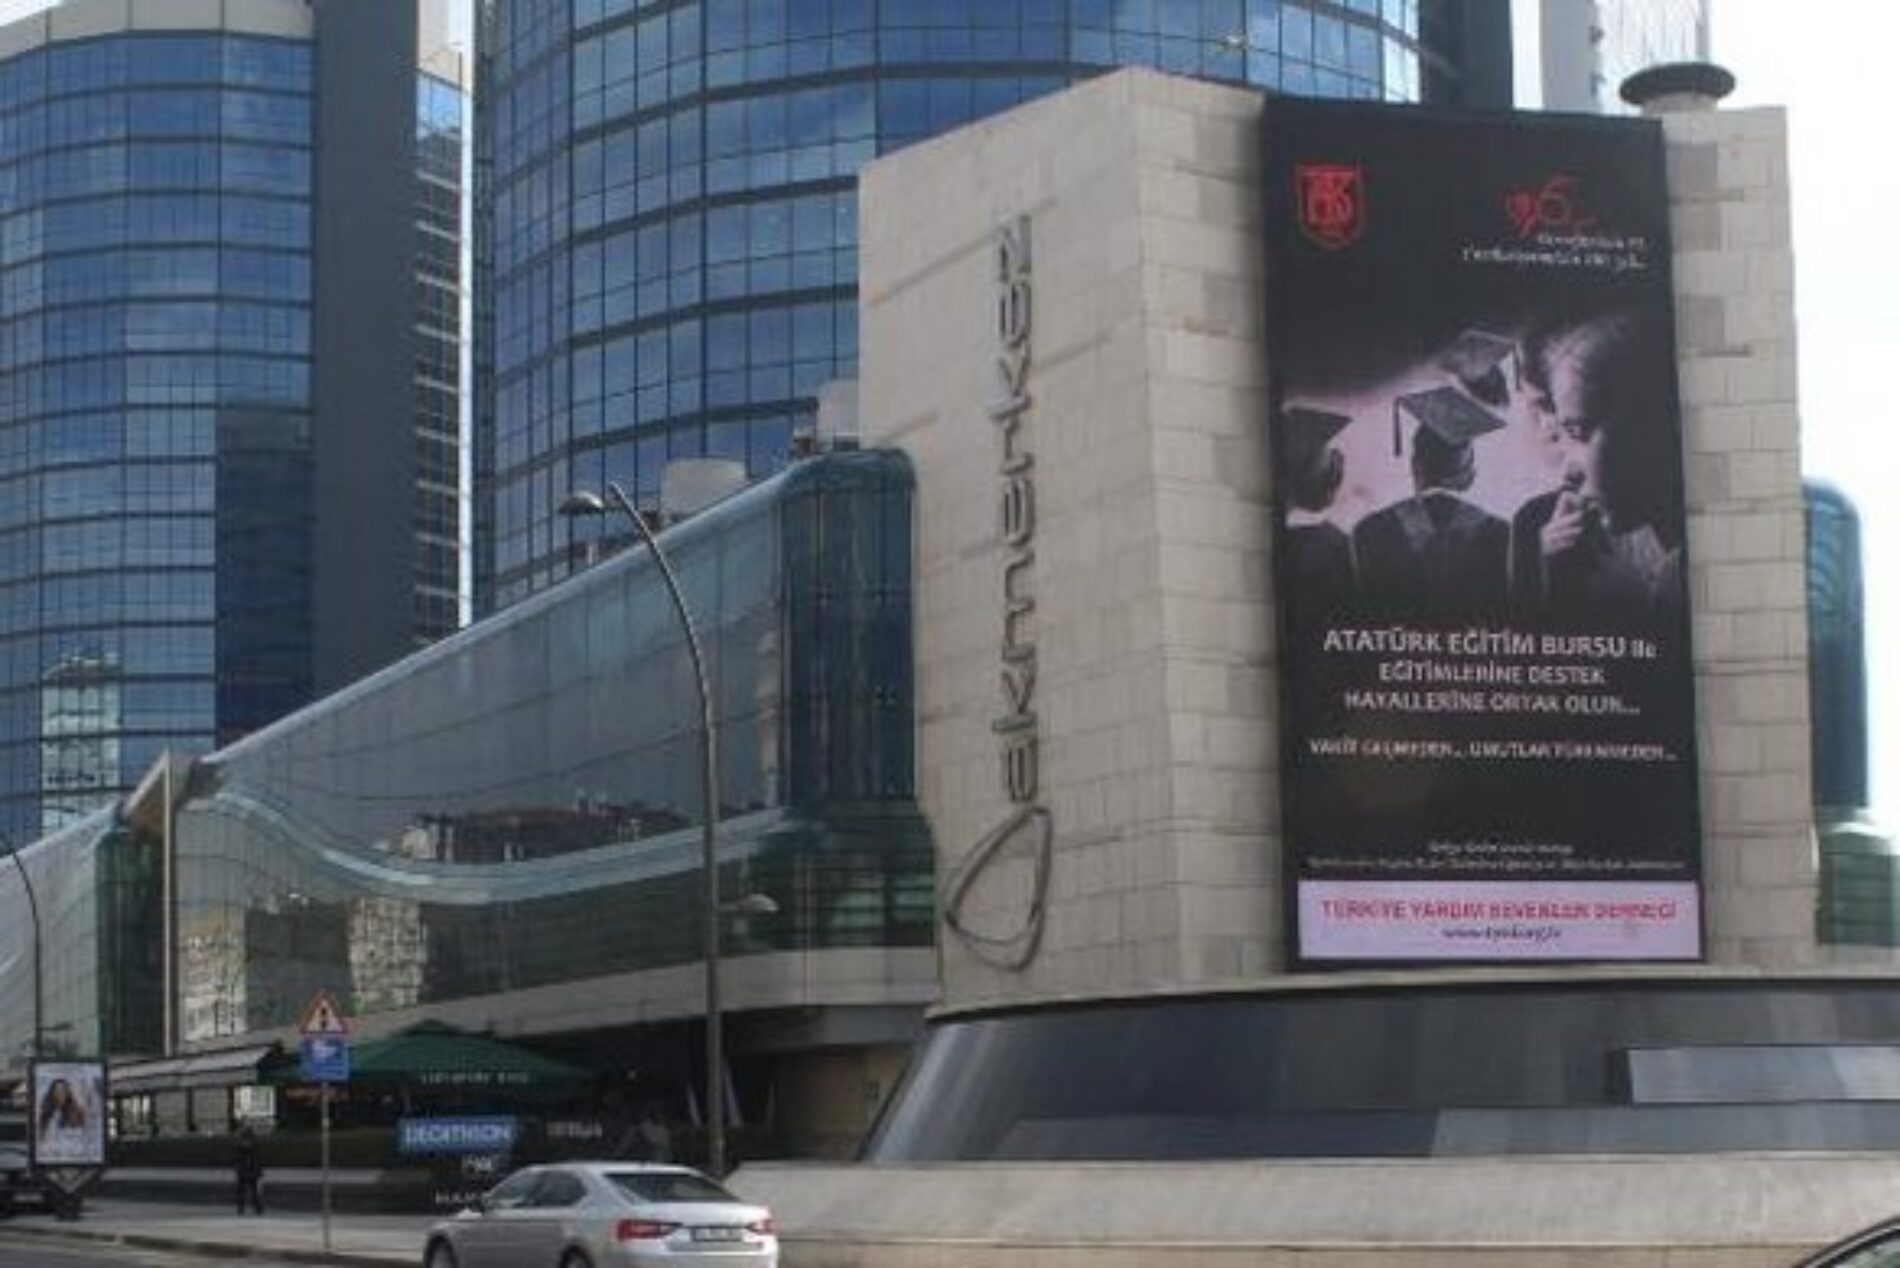 TYSD Bakırköy Şubemiz Atatürk Eğitim Burslu Öğrencilerimiz için Hazırlamış Olduğu Reklam Ekranlarda Yer Almaktadır